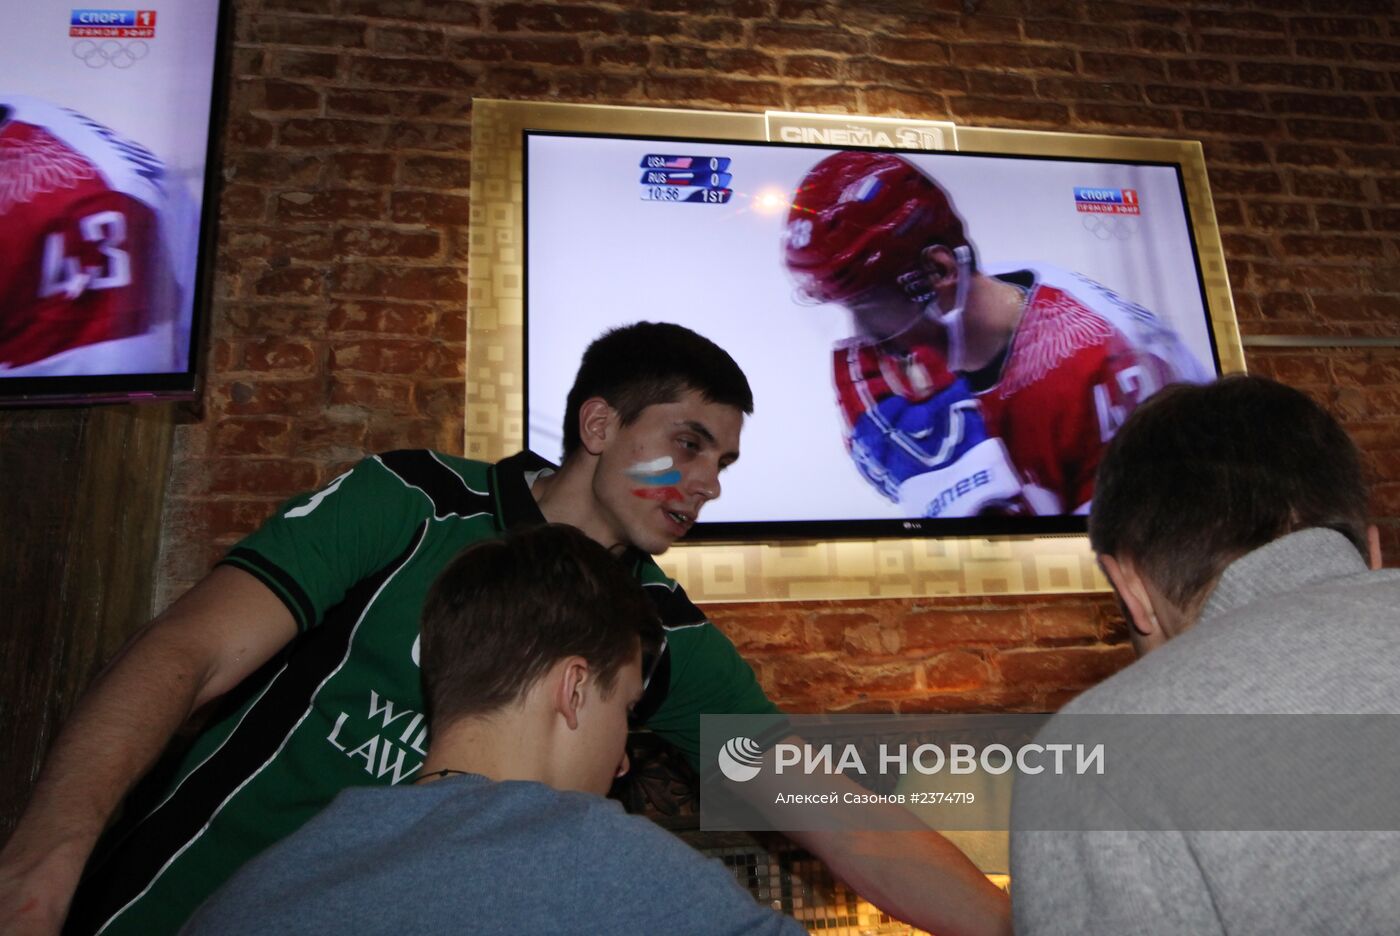 Болельщики смотрят трансляцию хоккейного матча Россия - США